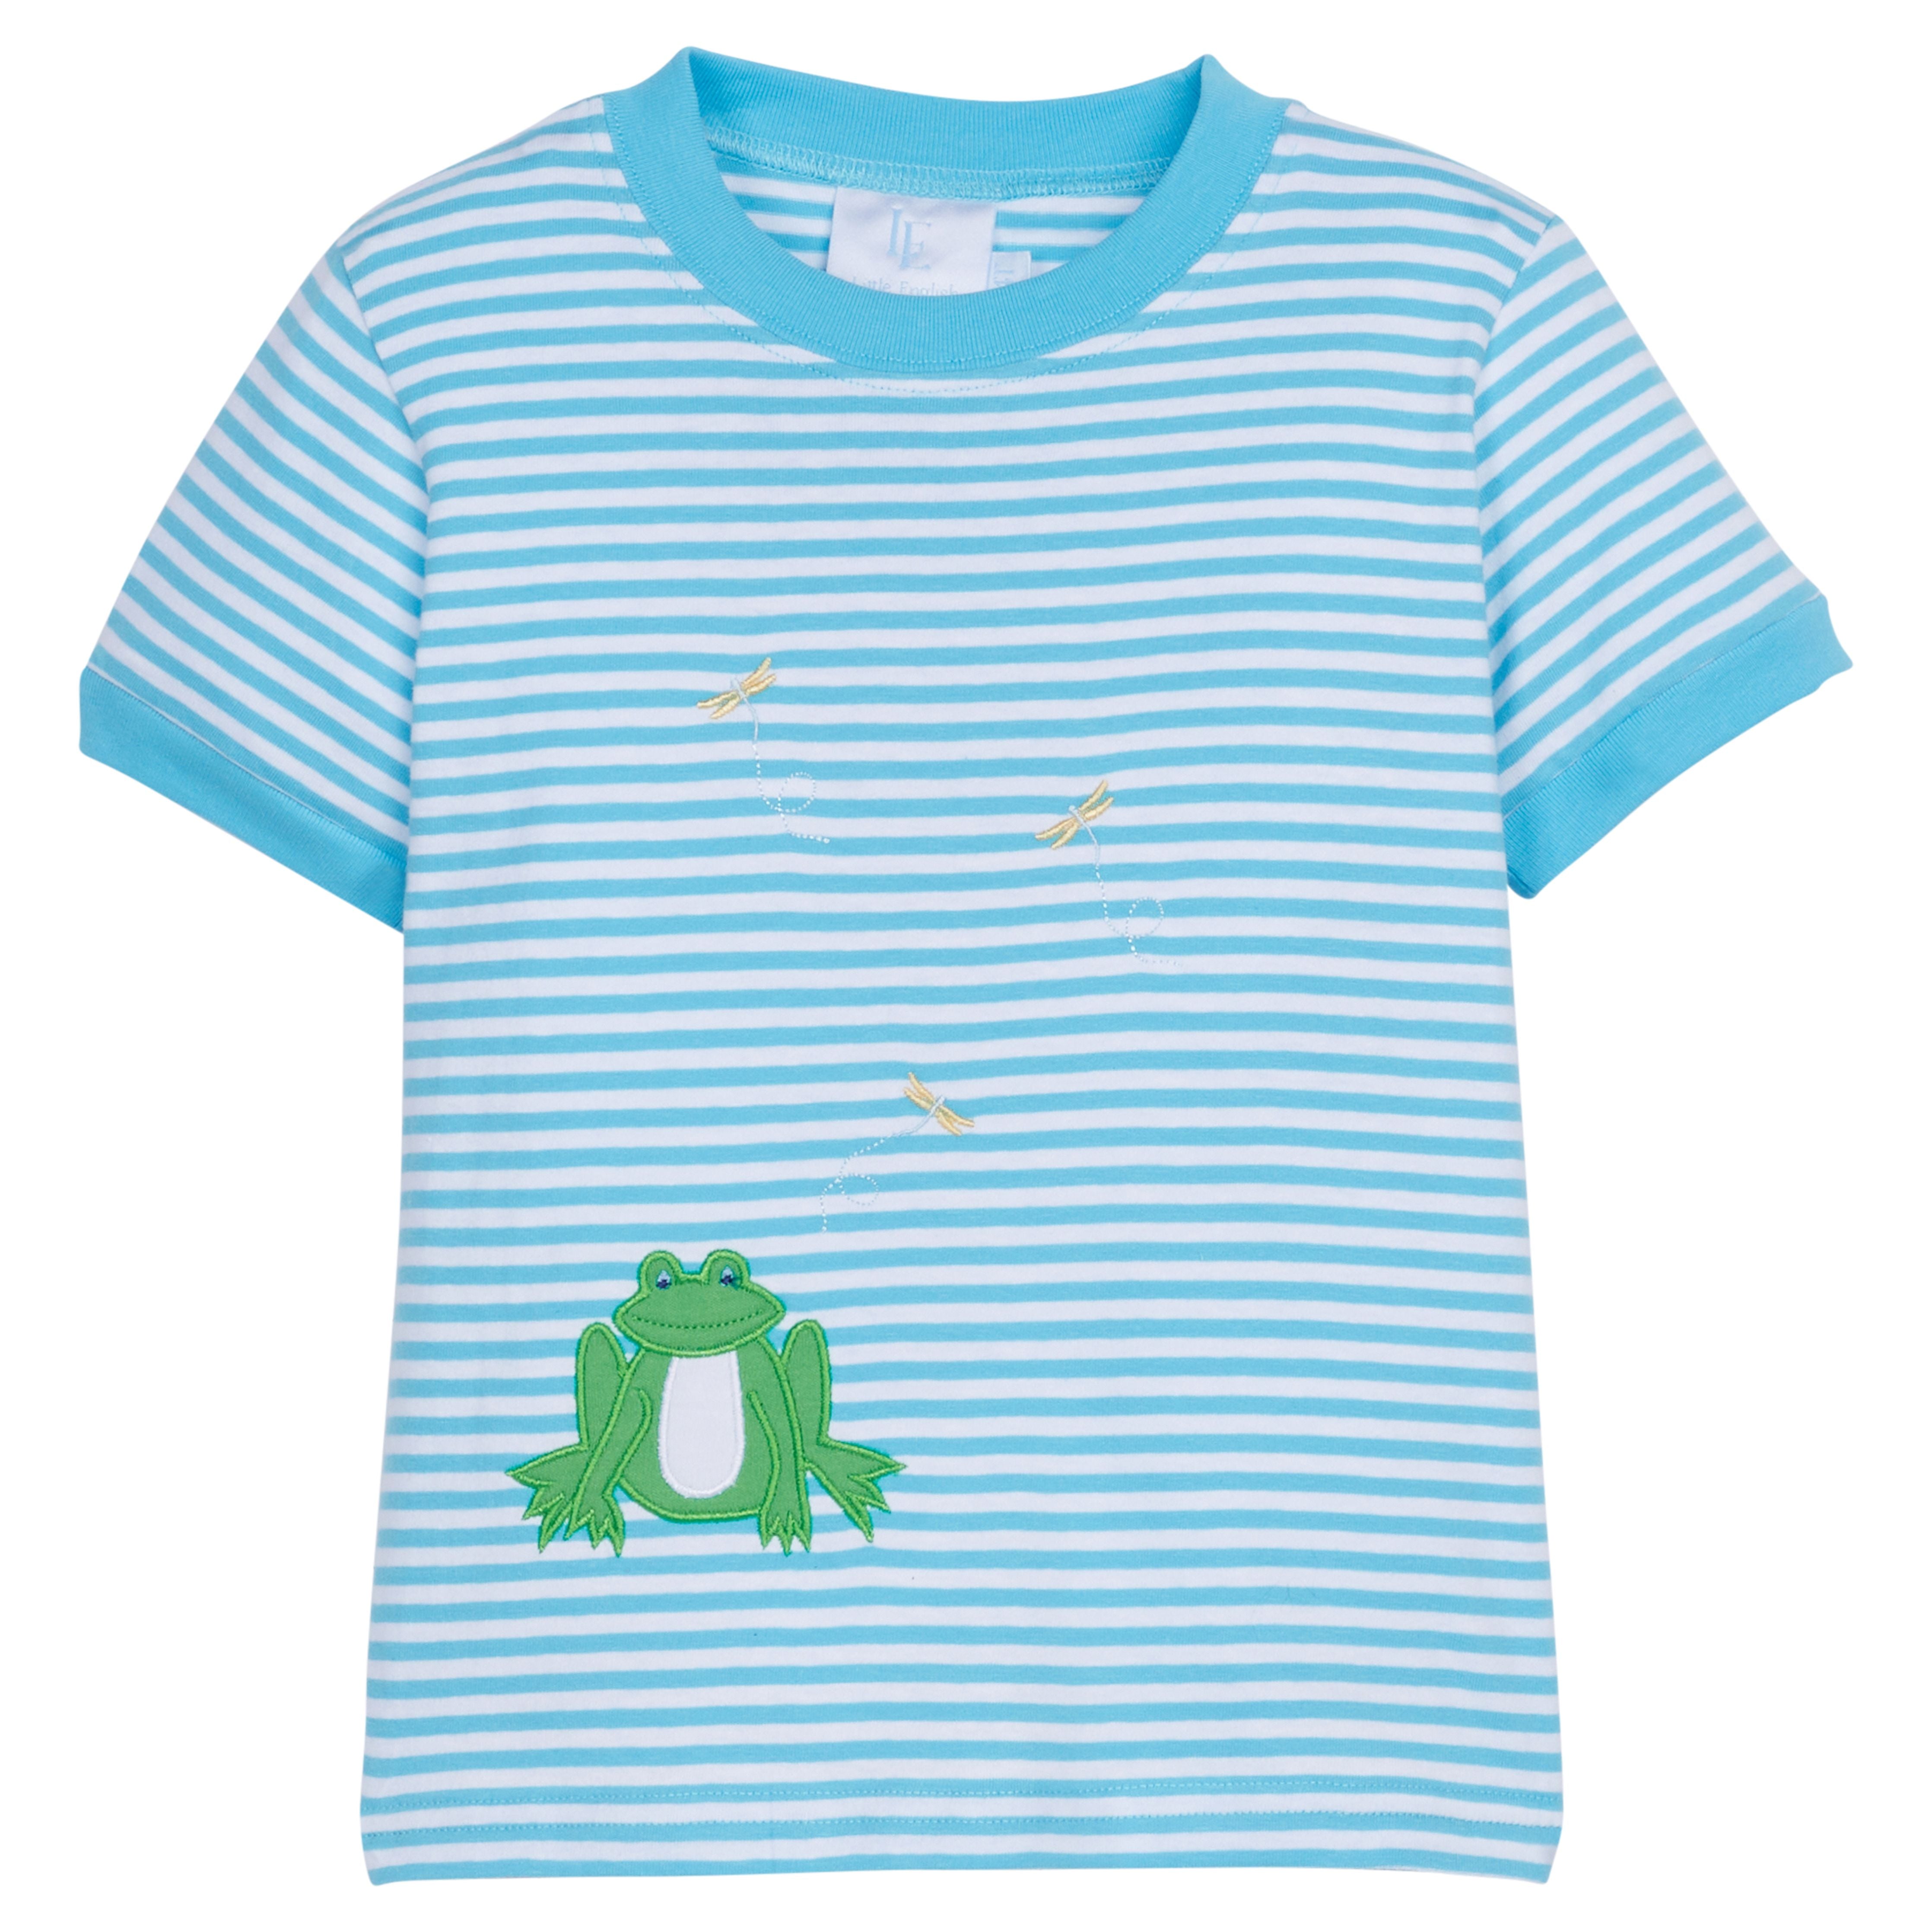 Aqua Stripe Frog Applique Shirt